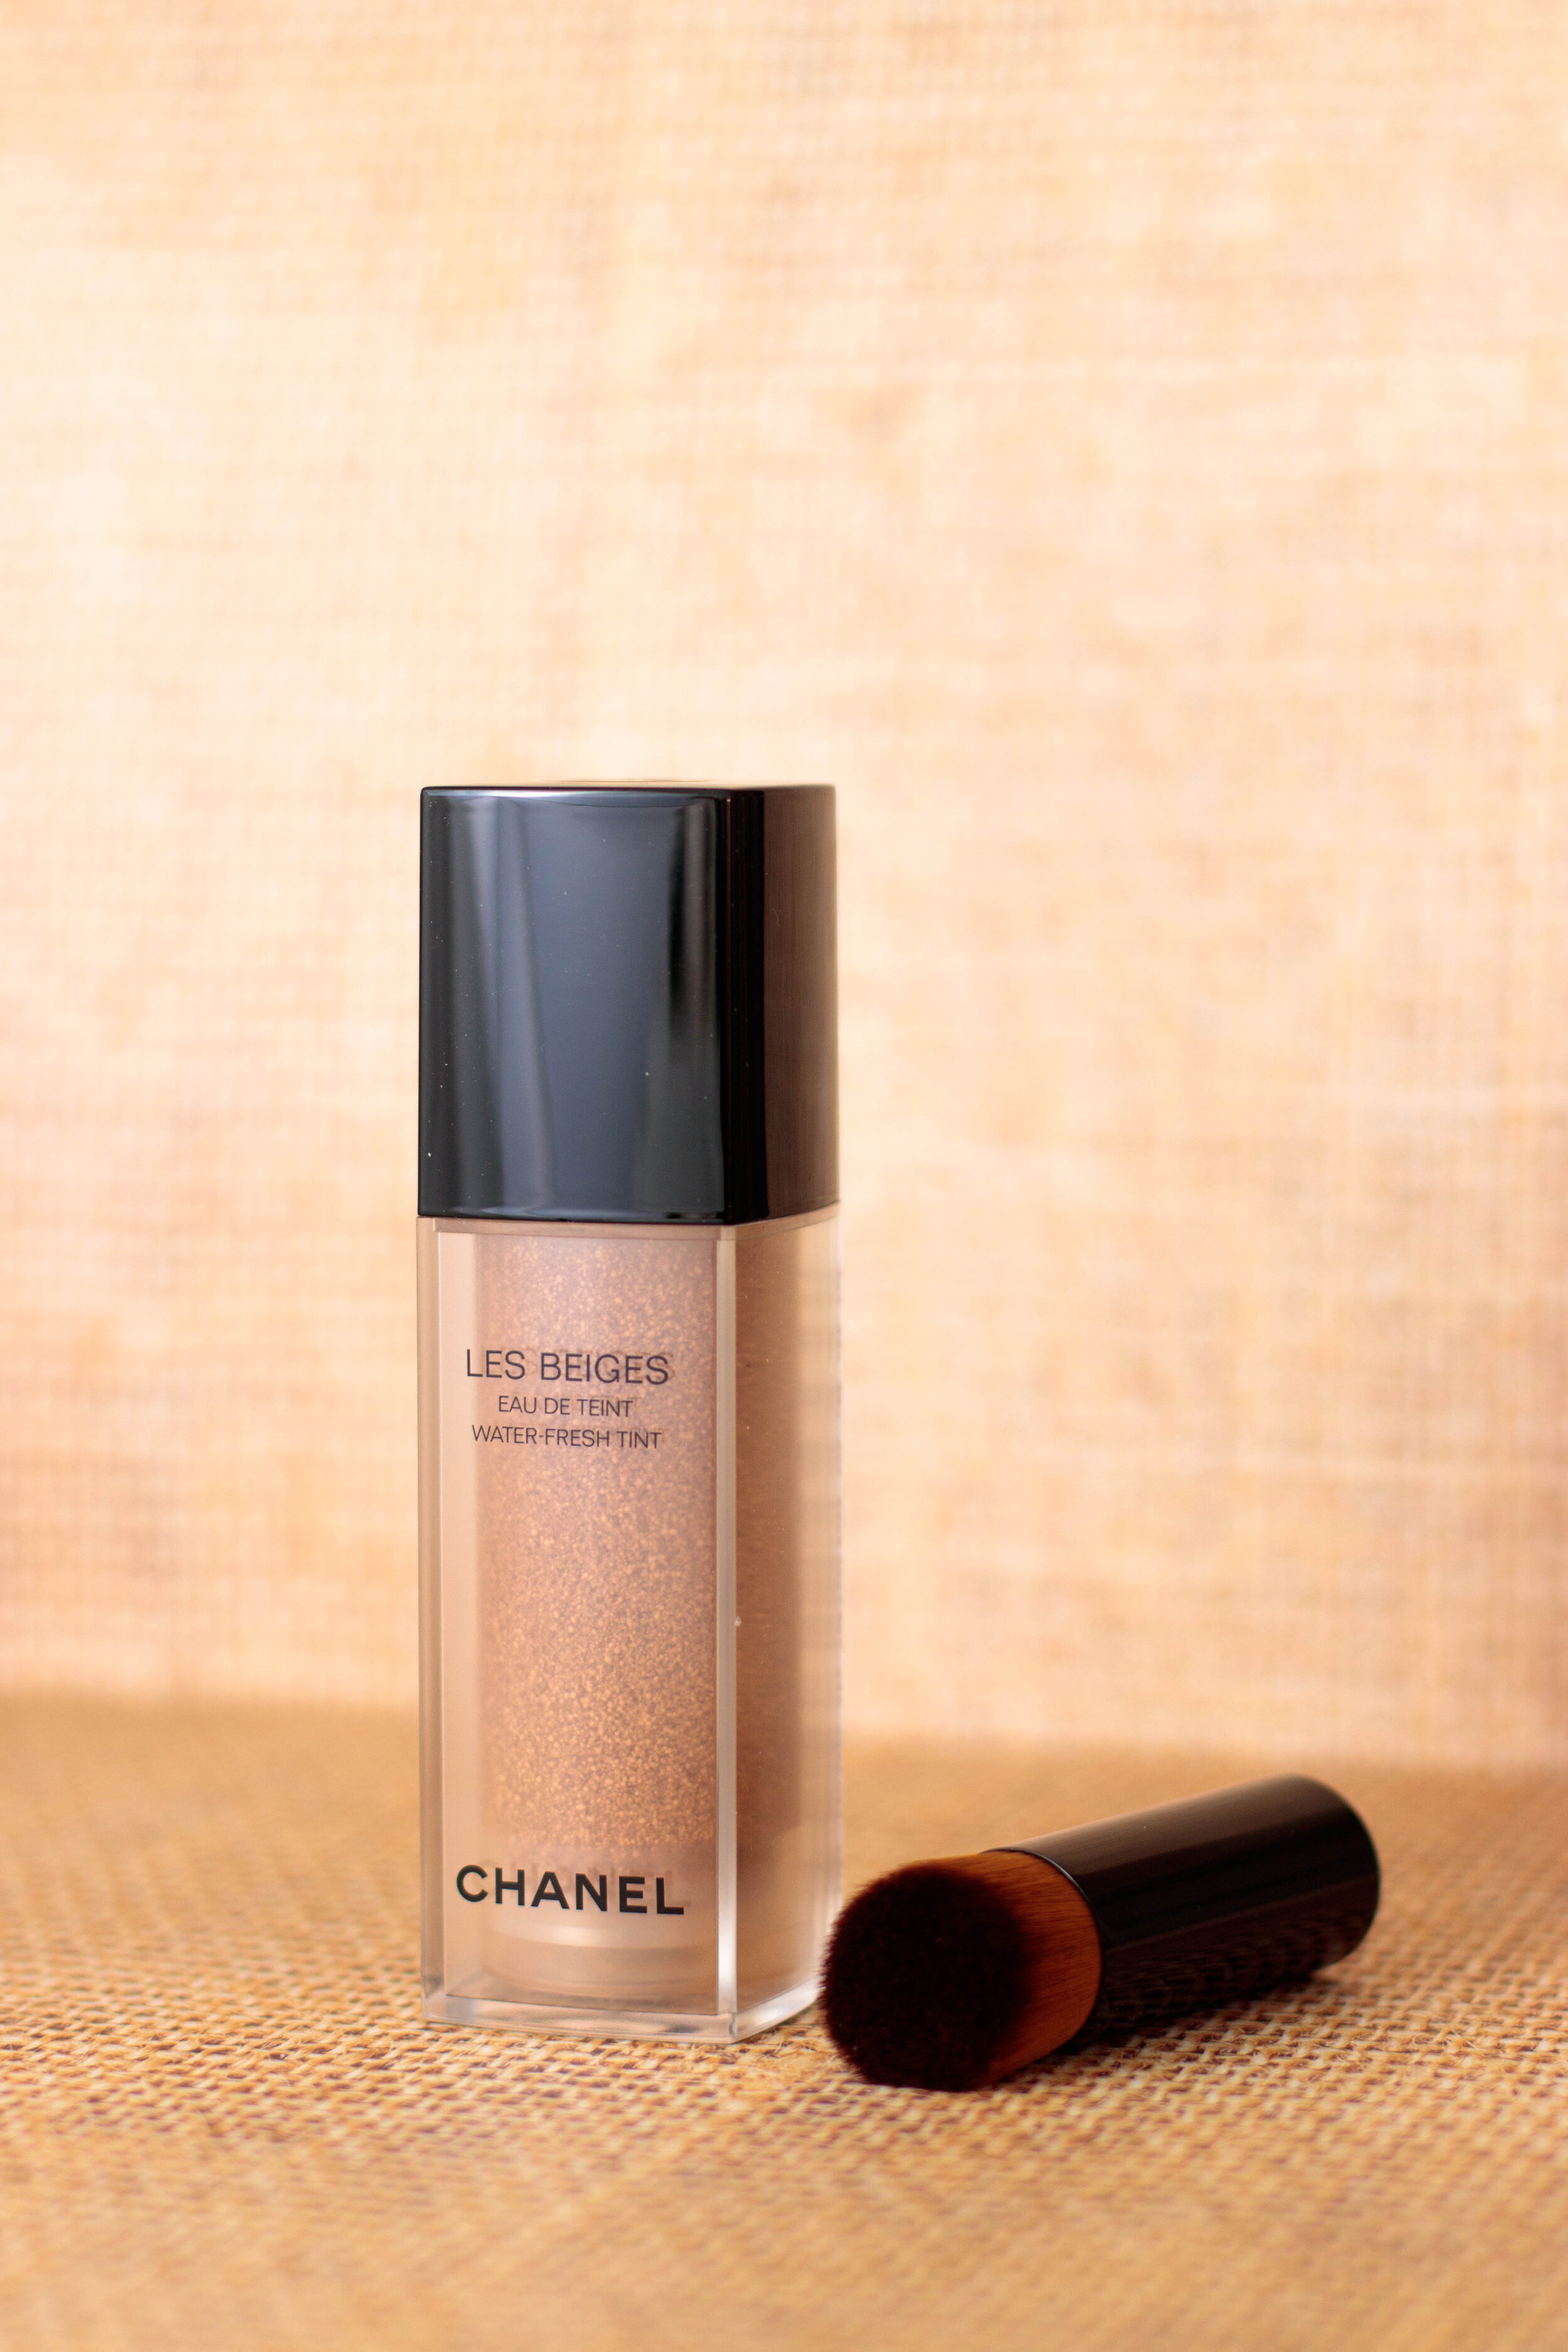 Chanel Les Beiges Eau de Teint, mon avis ! — Pauuulette - Blog Makeup